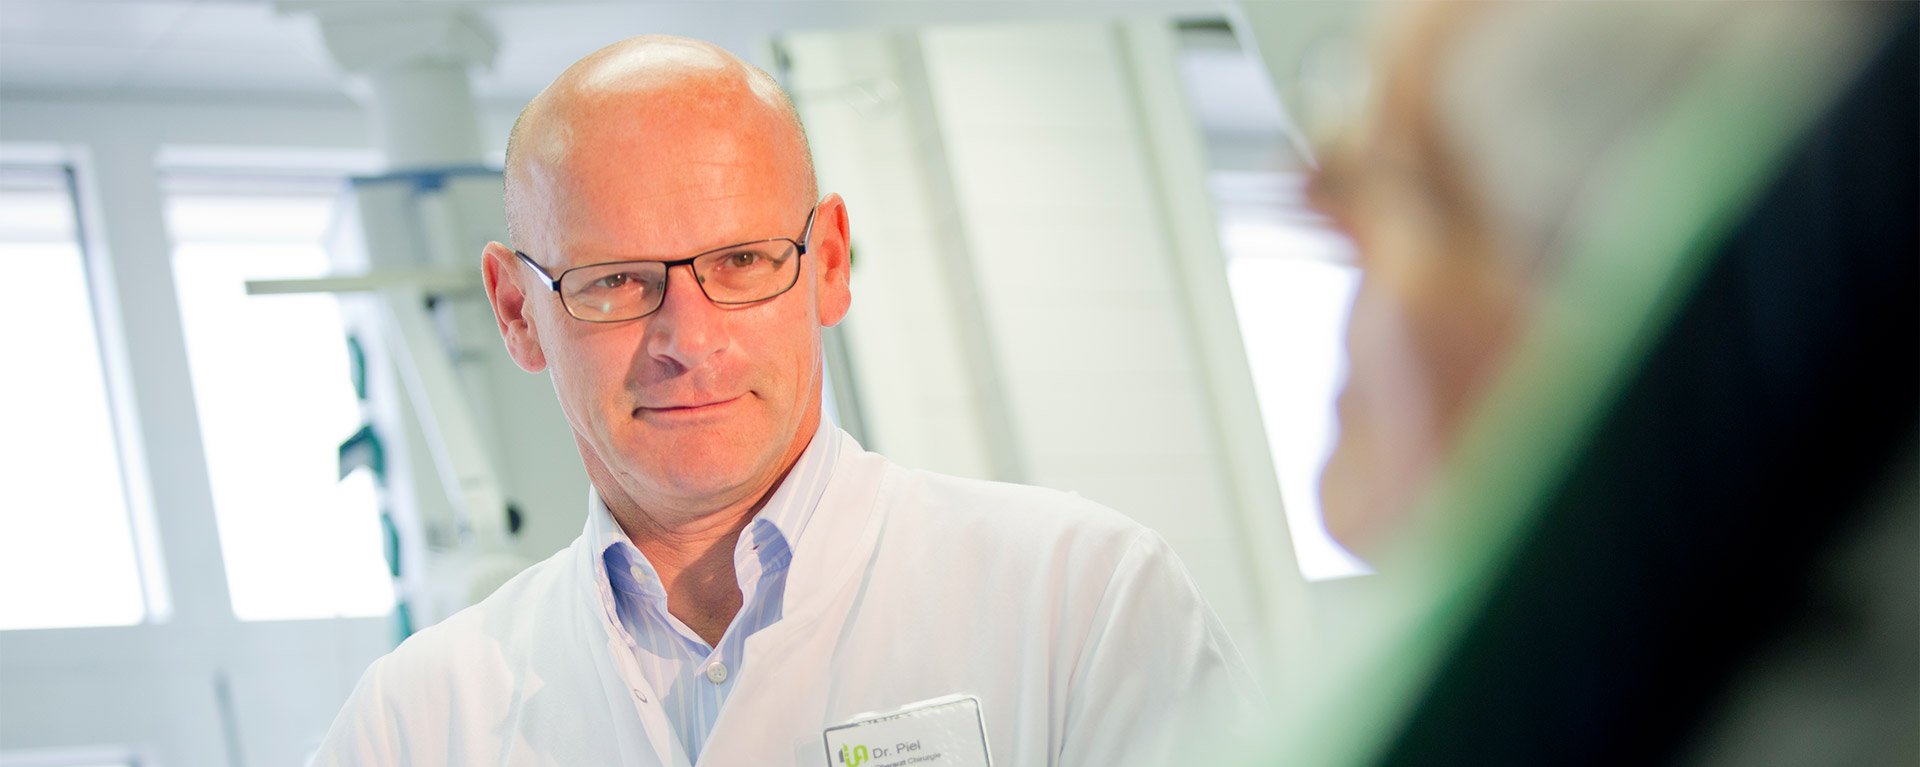 Dr. med. Gerhard Piel, Leiter der Sektion Gefäßchirurgie an der Klinik Mindelheim, führt eine Untersuchung am Bein einer Patientin durch